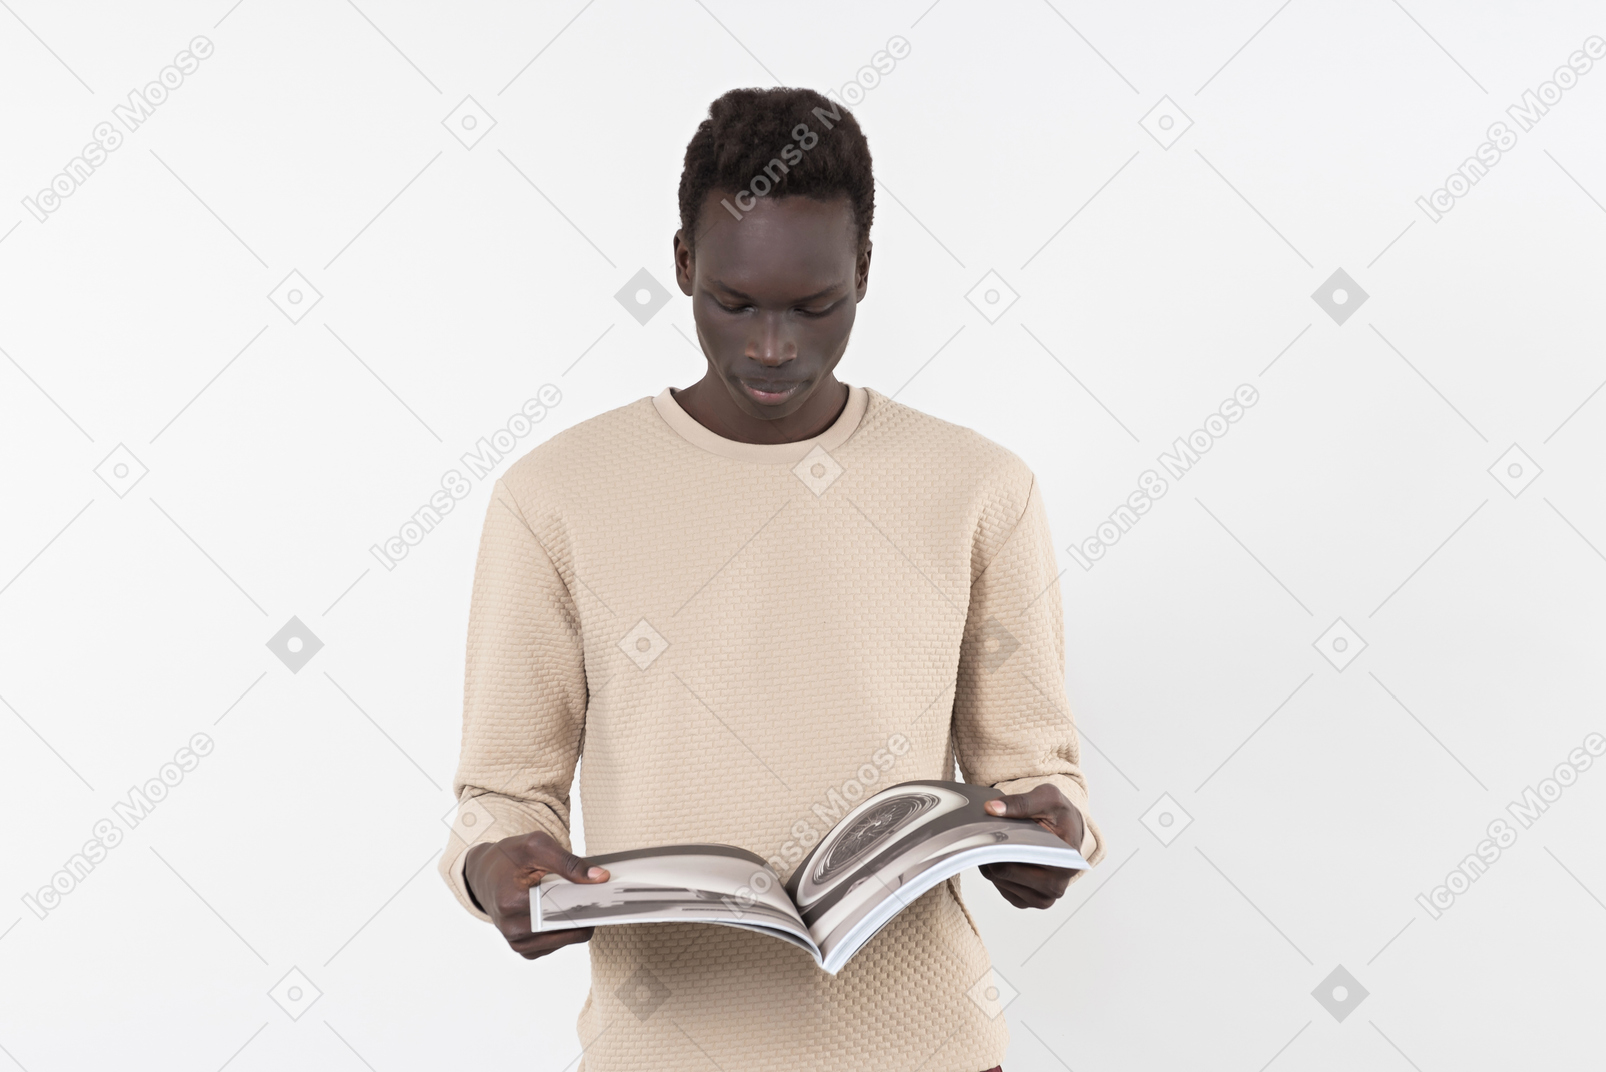 Un jeune homme noir dans un chandail gris debout seul sur le fond blanc avec un livre dans ses mains